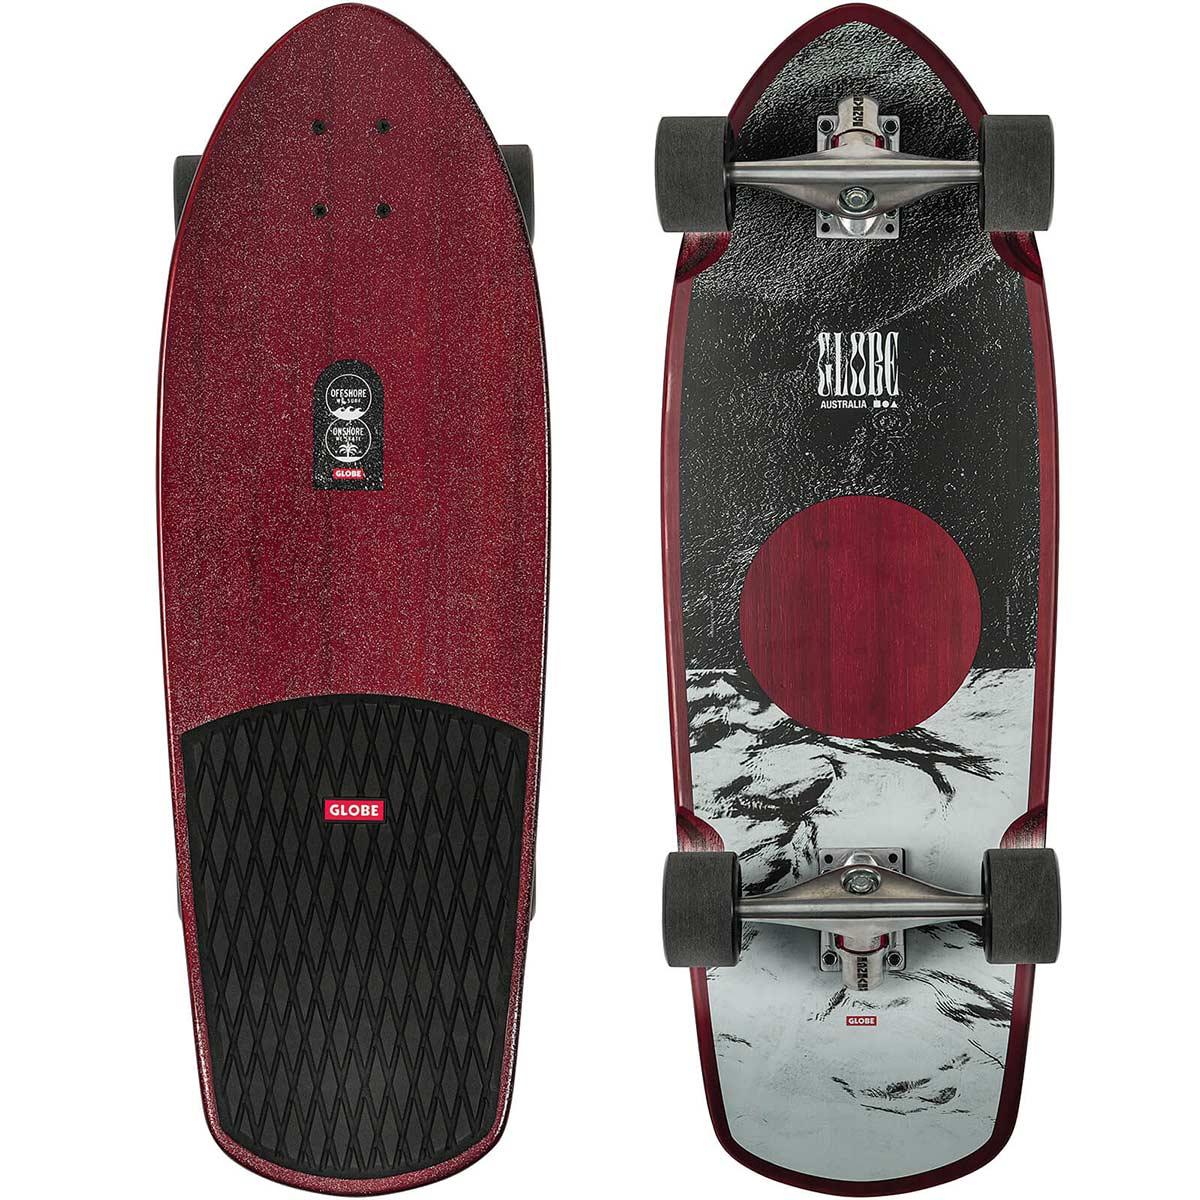 Globe Stubby Surfskate Cherry/Bamboo Complete Skateboard, "